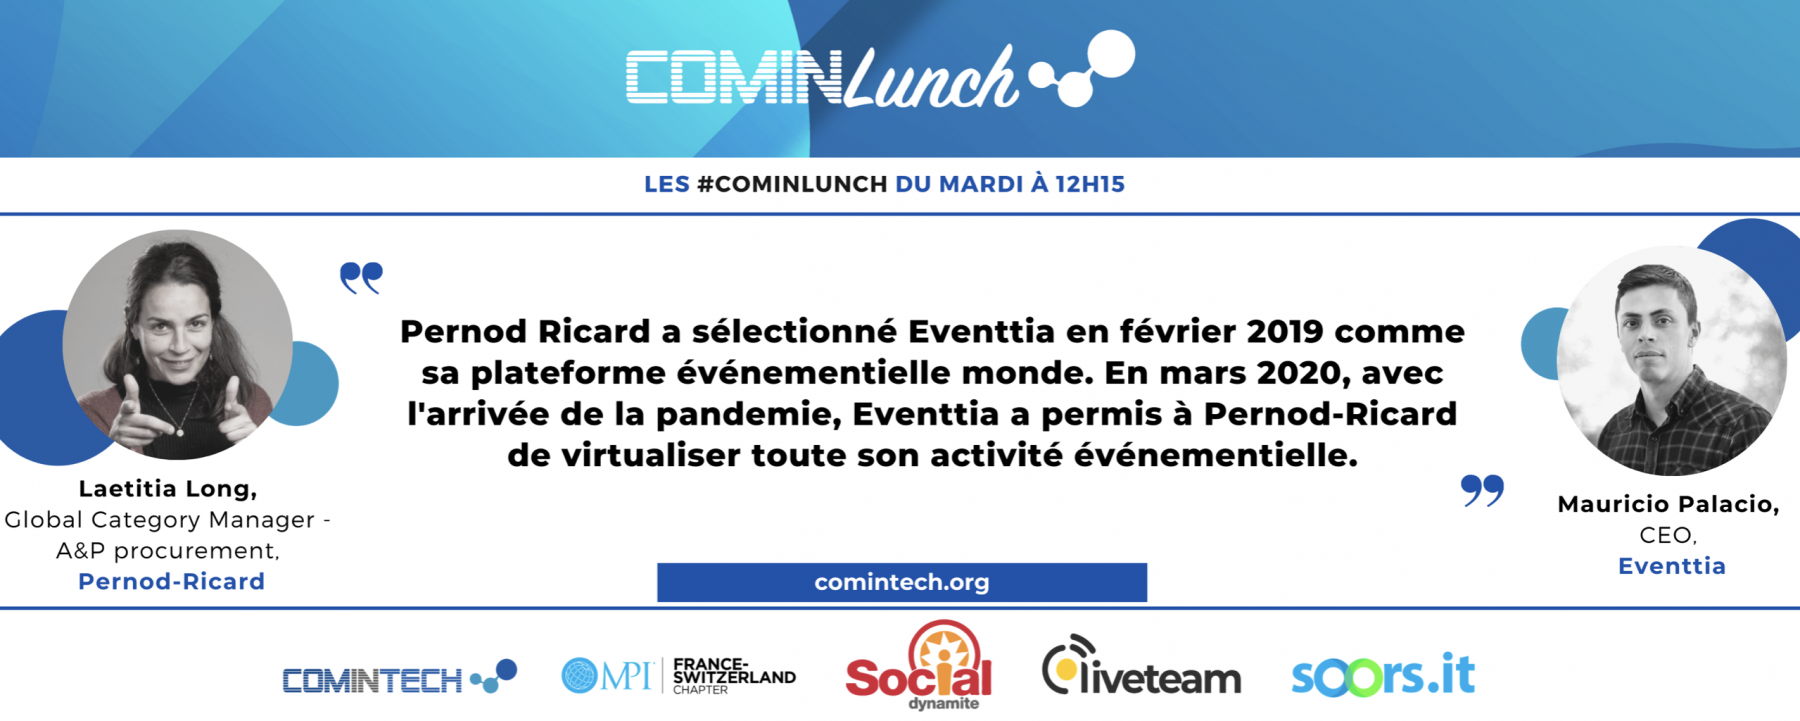 Les lives #ComInTech : live du mardi 16 février, organisé par MPI France Suisse en ligne le 16 février